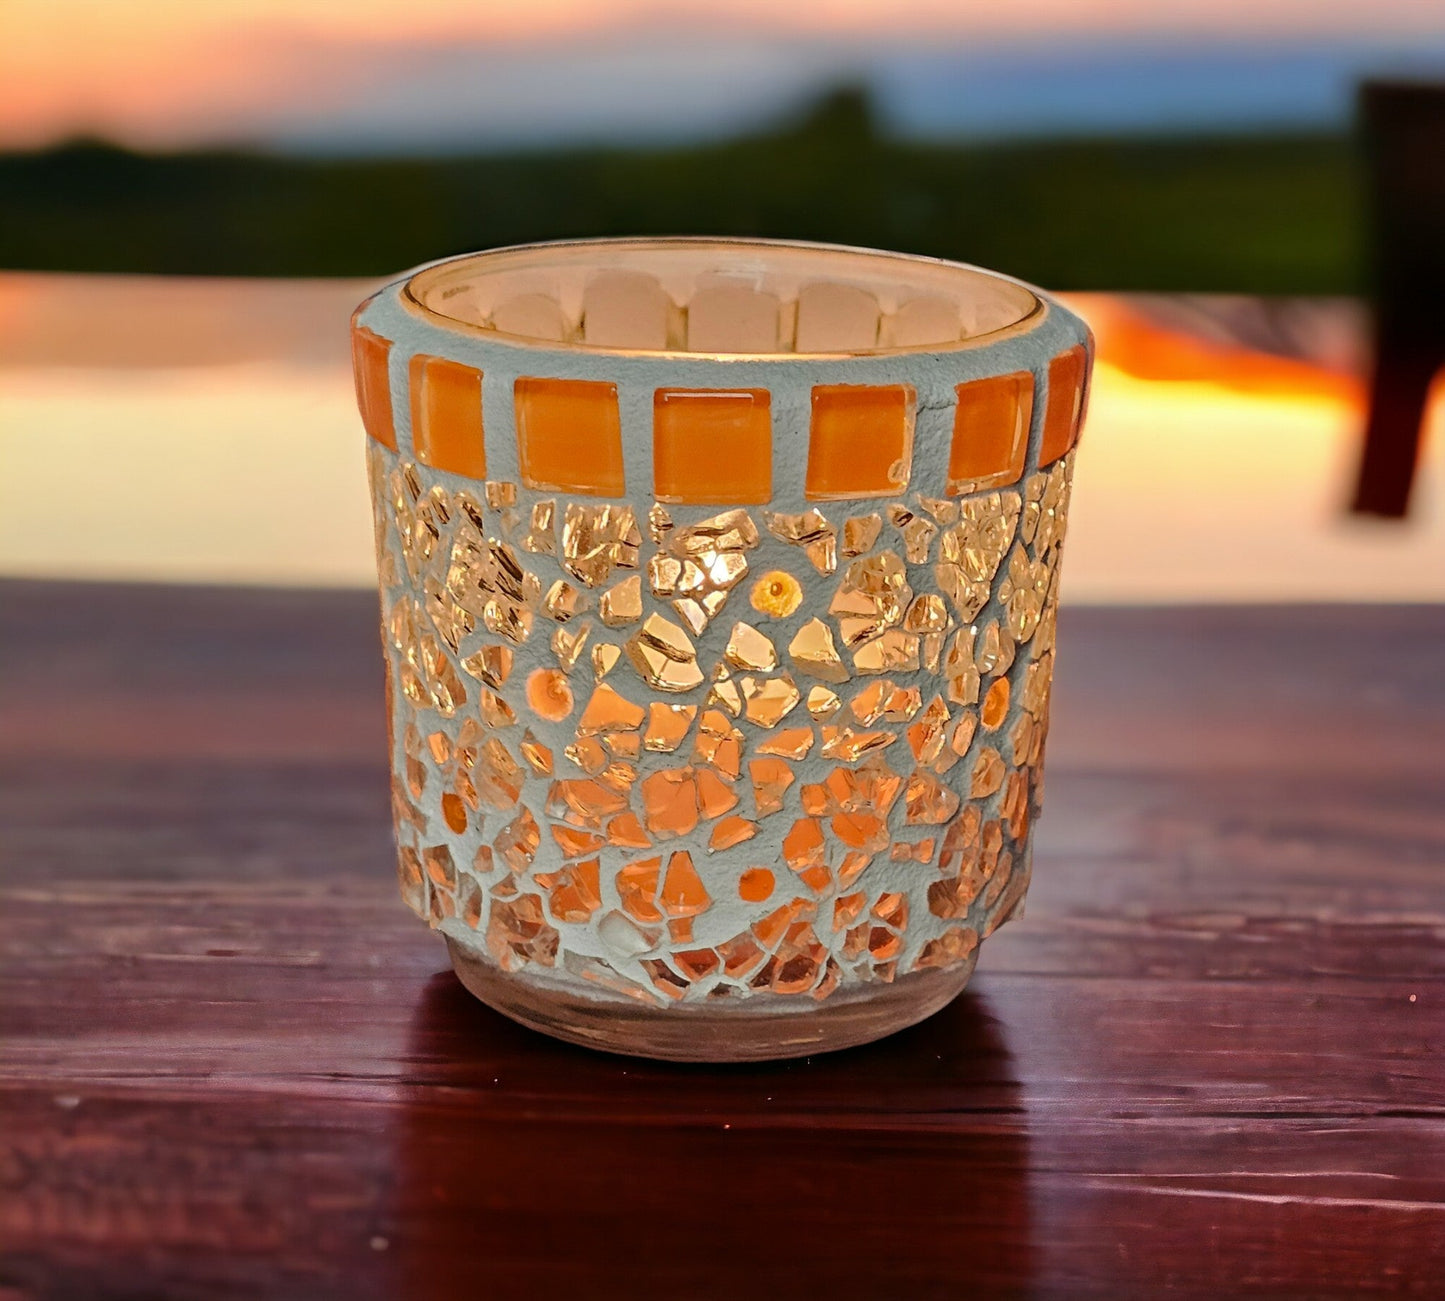 Mosaik Windlicht orange transparent 7 cm hoch - handgemacht - Mosaikkasten aus alt mach neu dekoidee